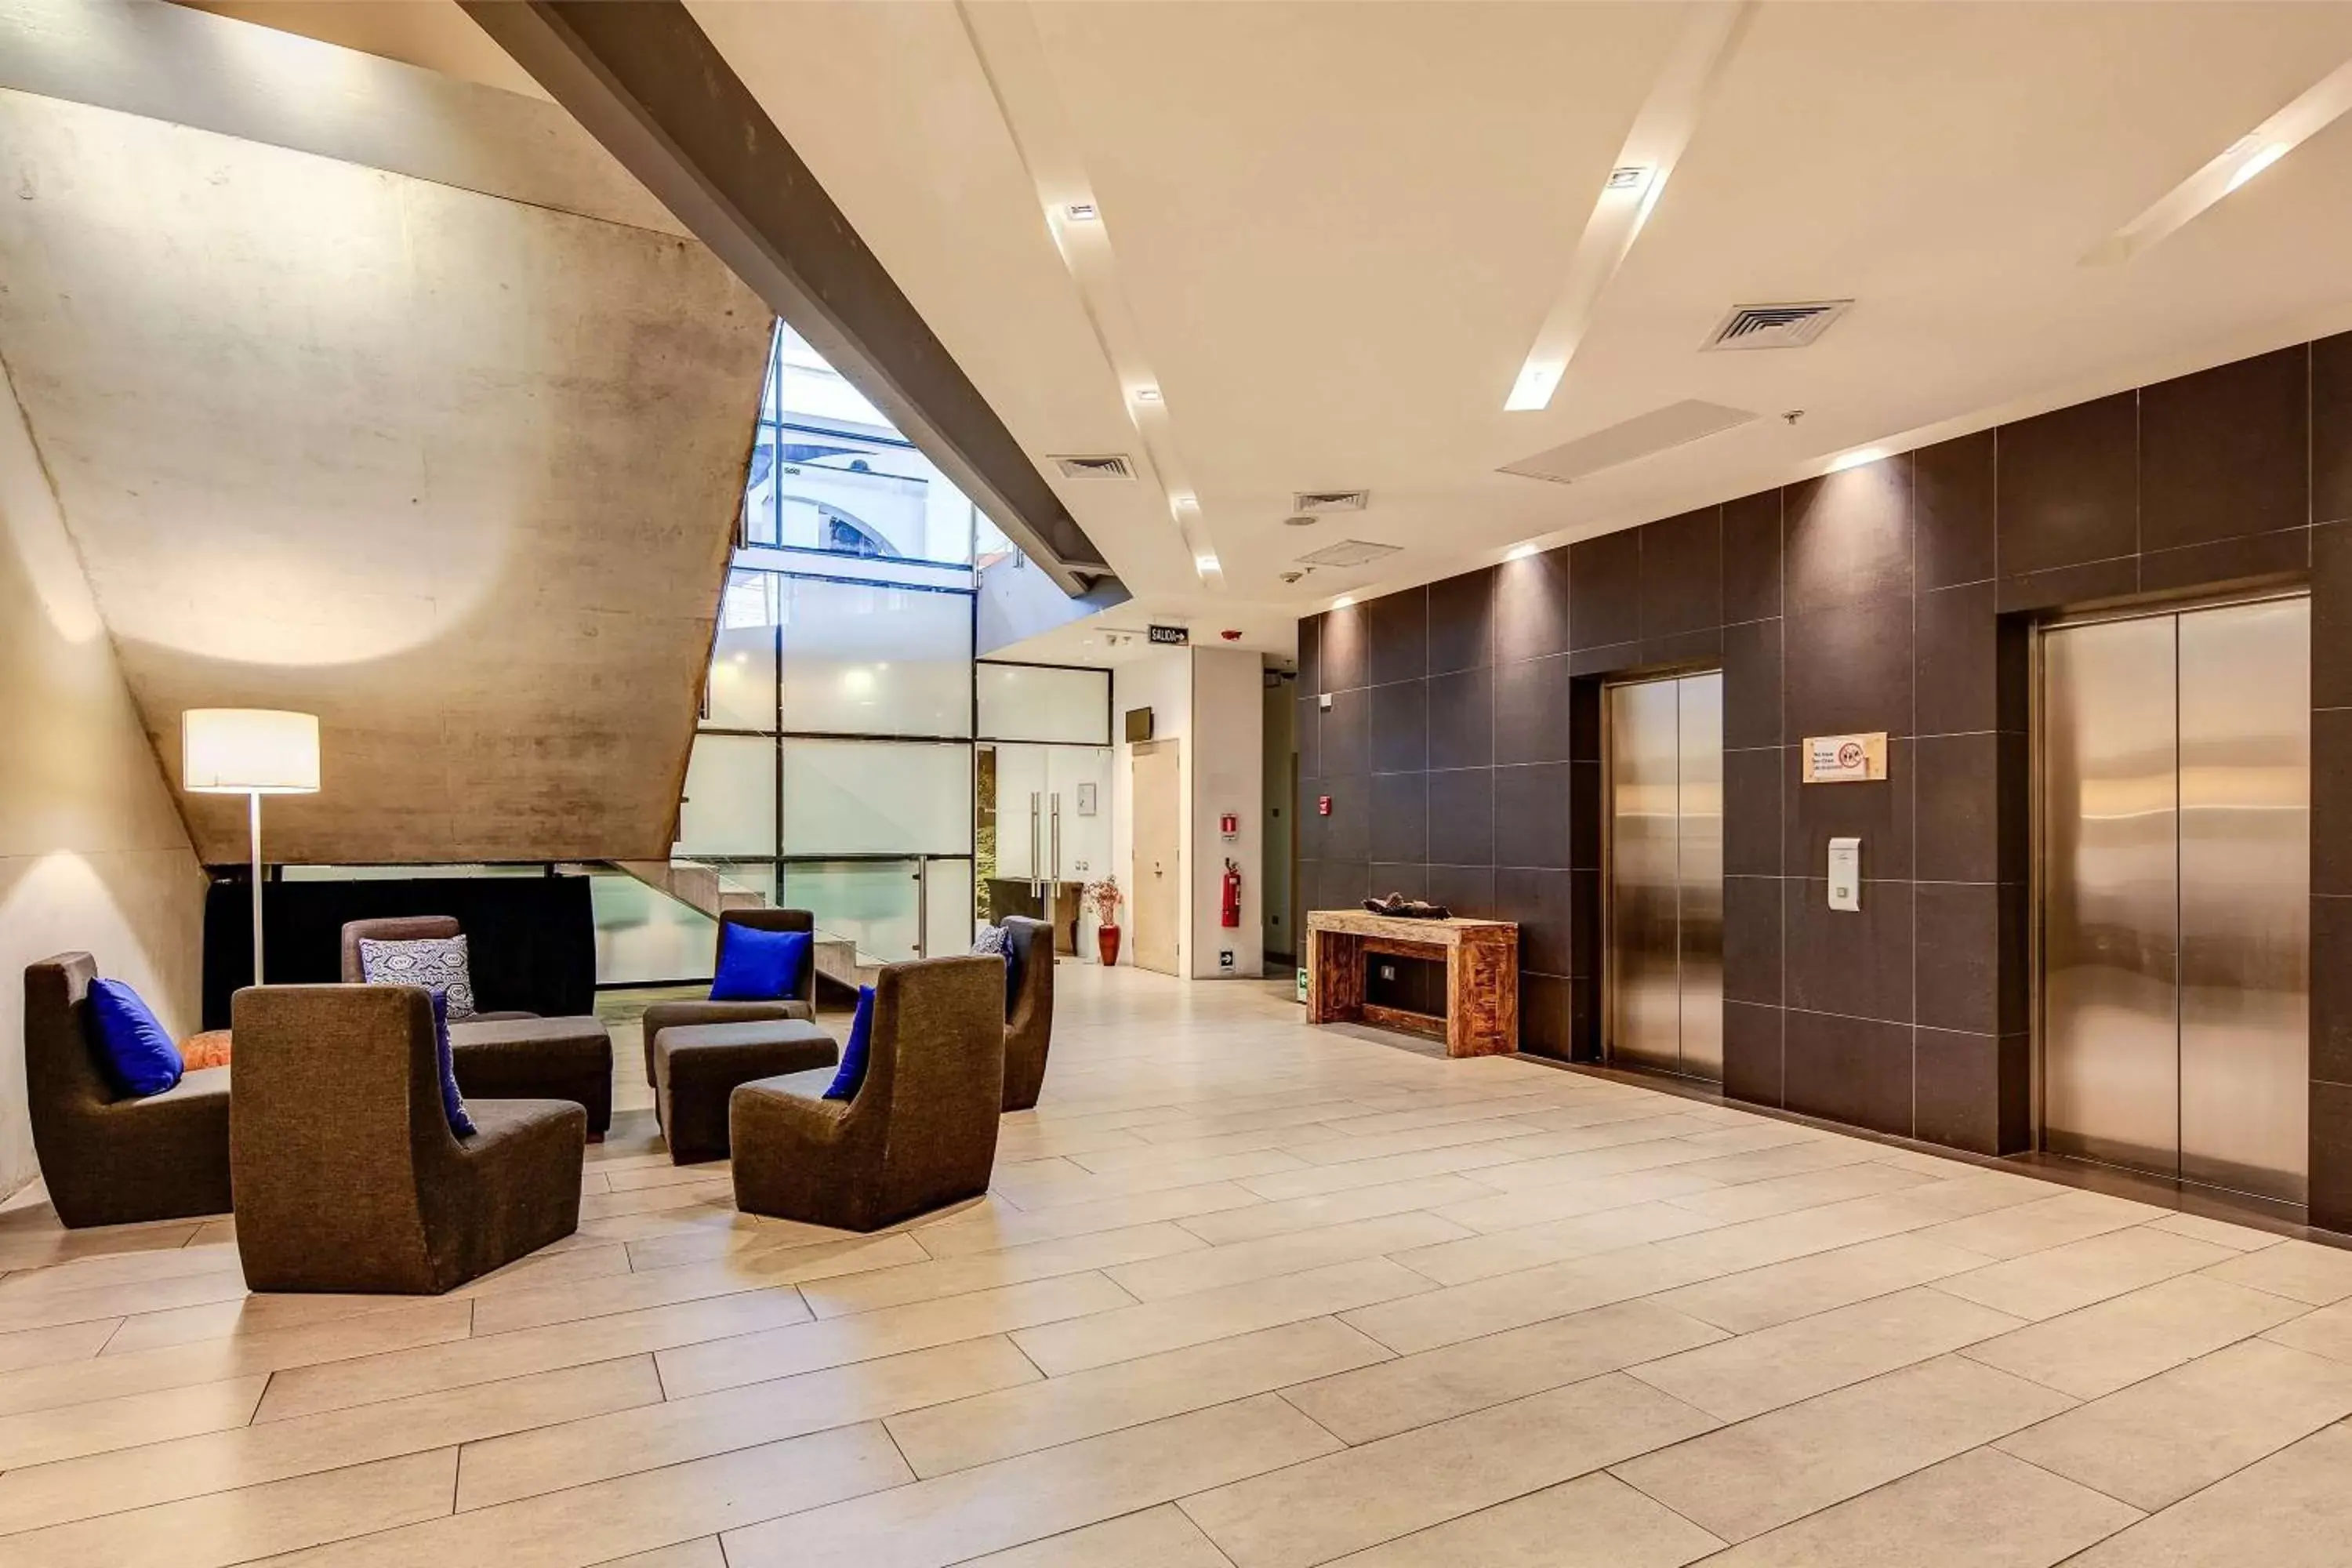 Lobby or reception, Lobby/Reception in Wyndham Concepcion Pettra